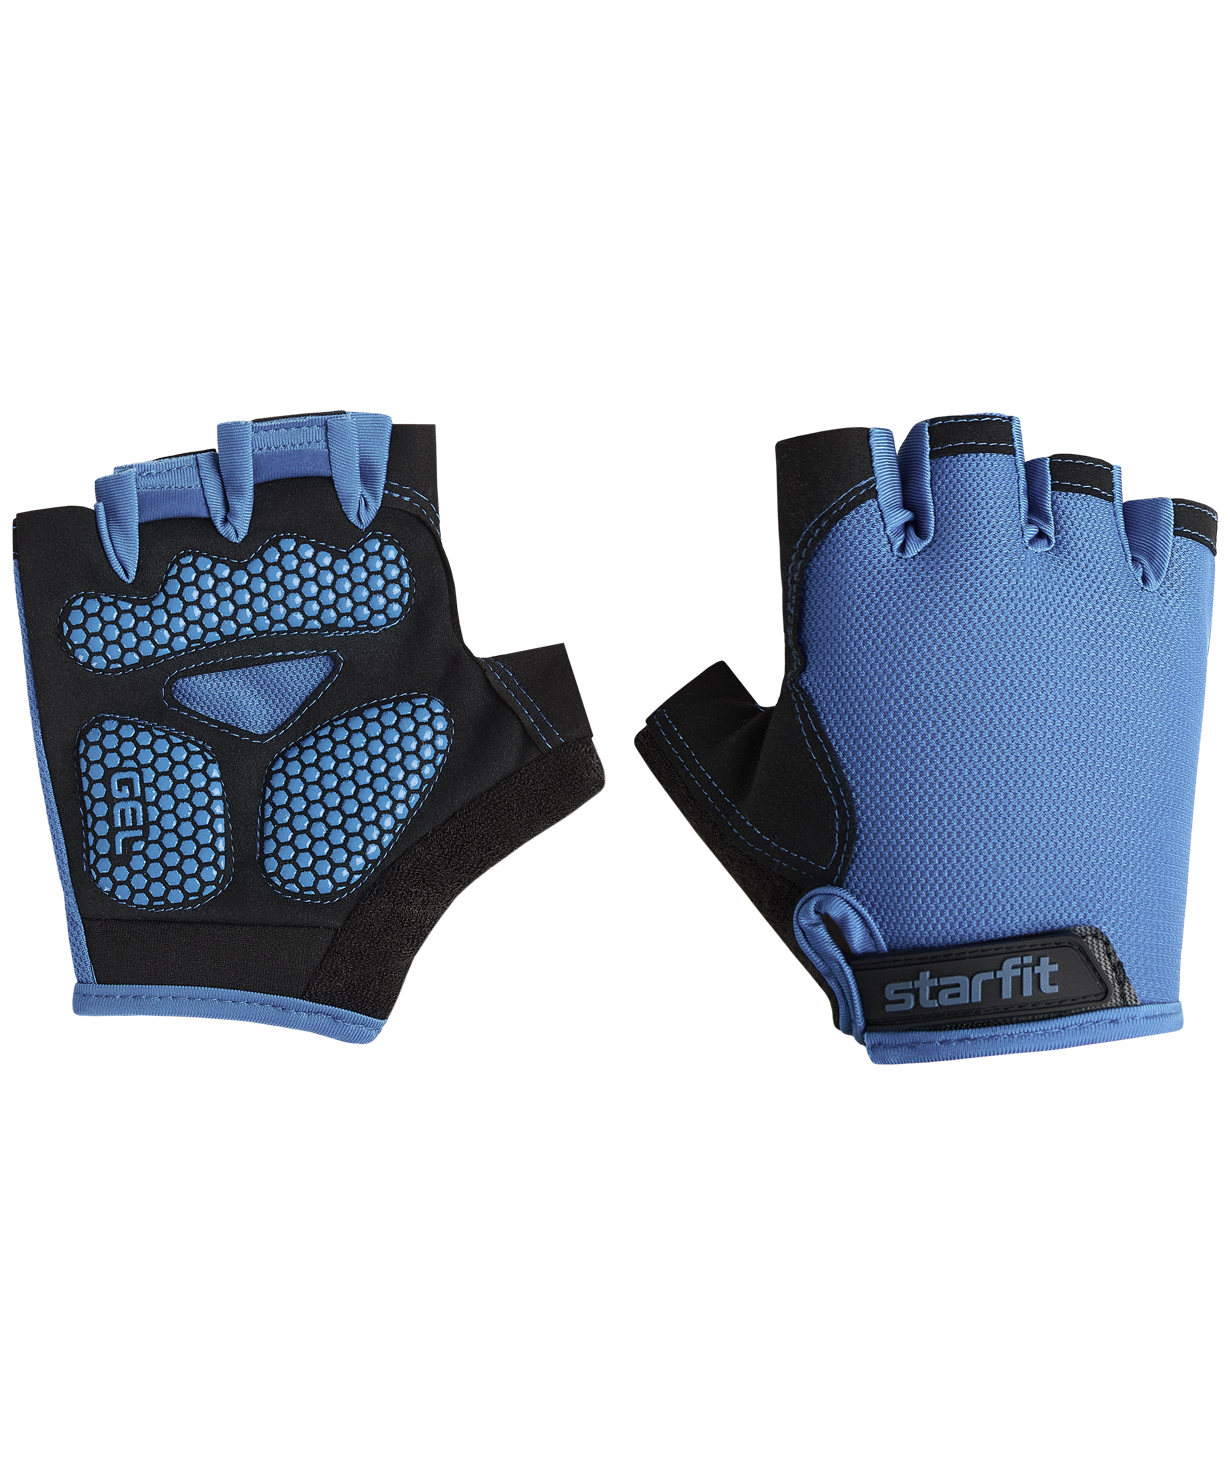 Перчатки для фитнеса Starfit Wg-105, с гелевыми вставками, черный/синий размер S